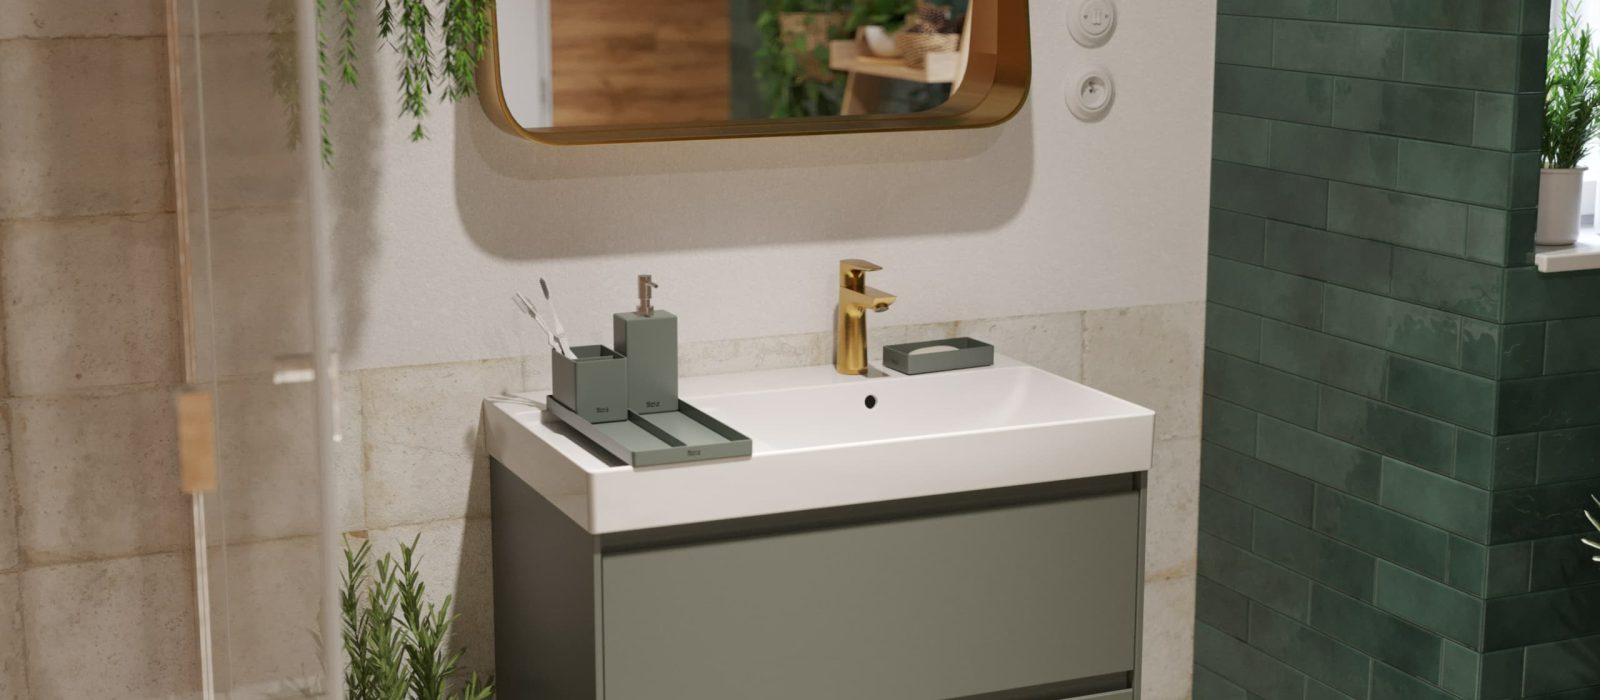 SIKO Závěsná skříňka s umyvadlem a zásuvkami ROCA ONA, šedé koupelnové doplňky, zlatá umyvadlová baterie v koupelně v boho stylu